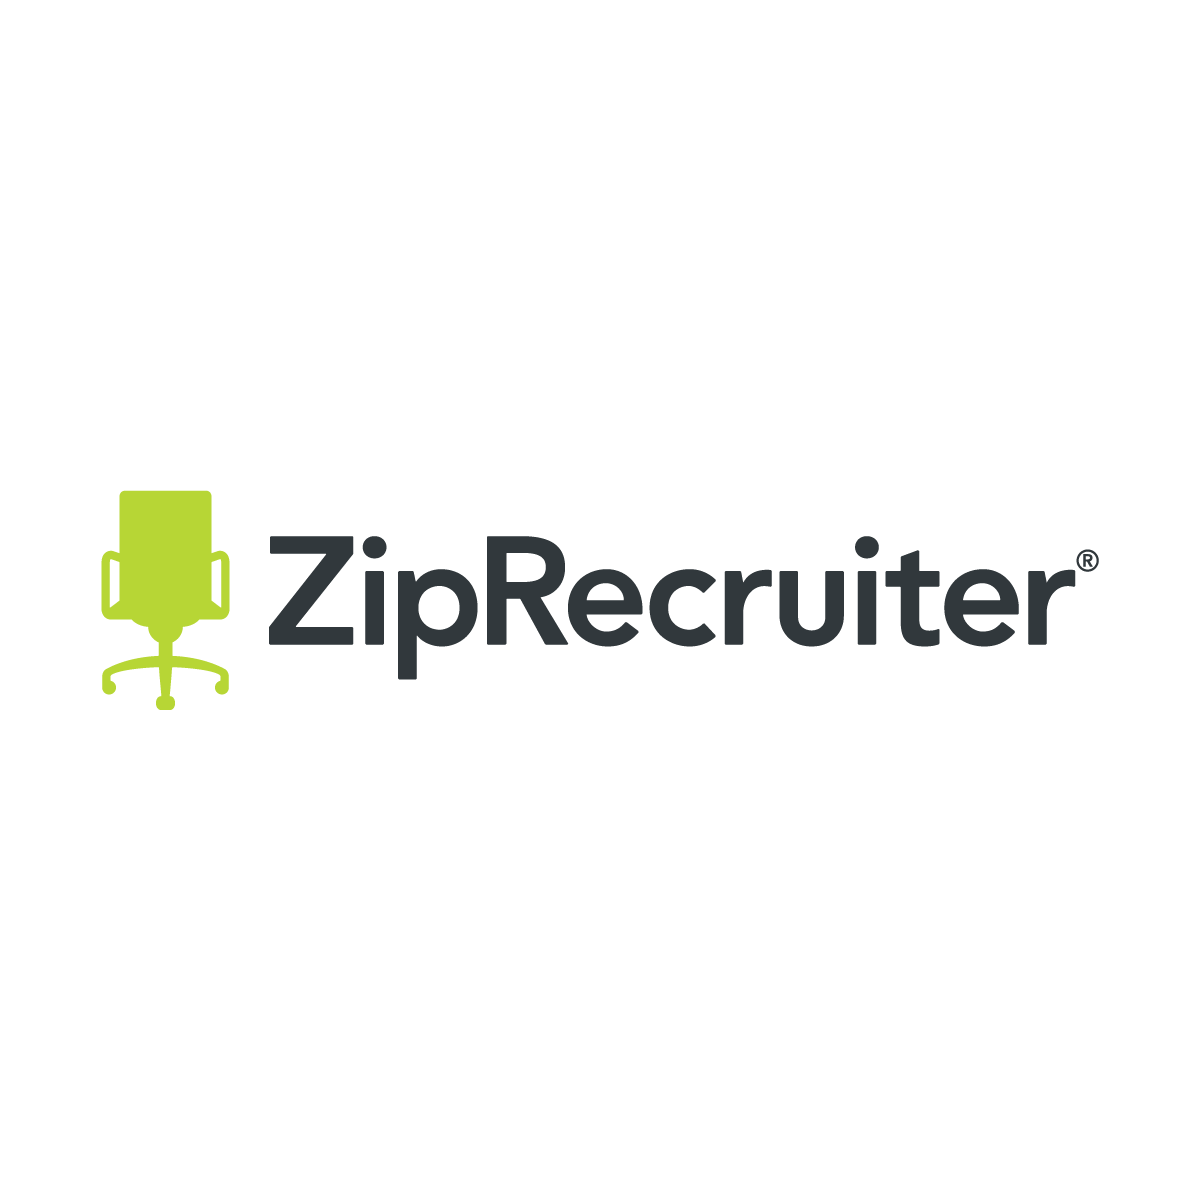 ZipRecruiter